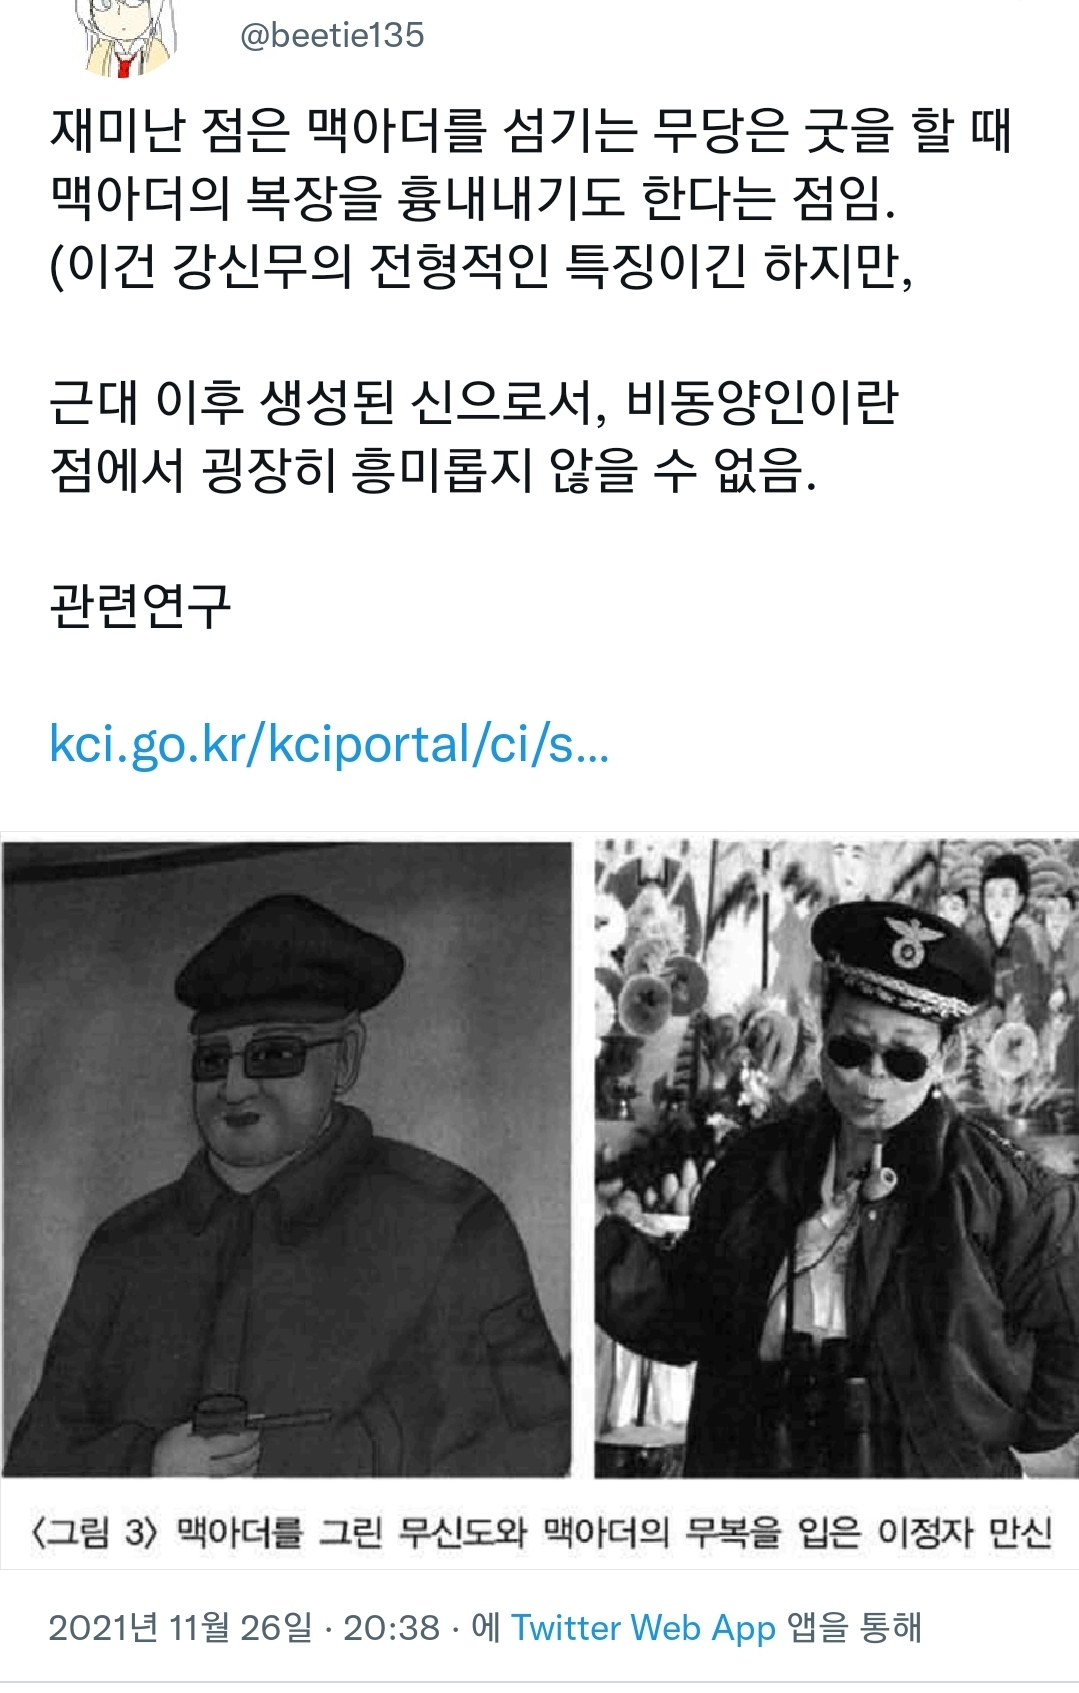 韓国の巫俗信仰では業績を立てた将軍は軍神になる